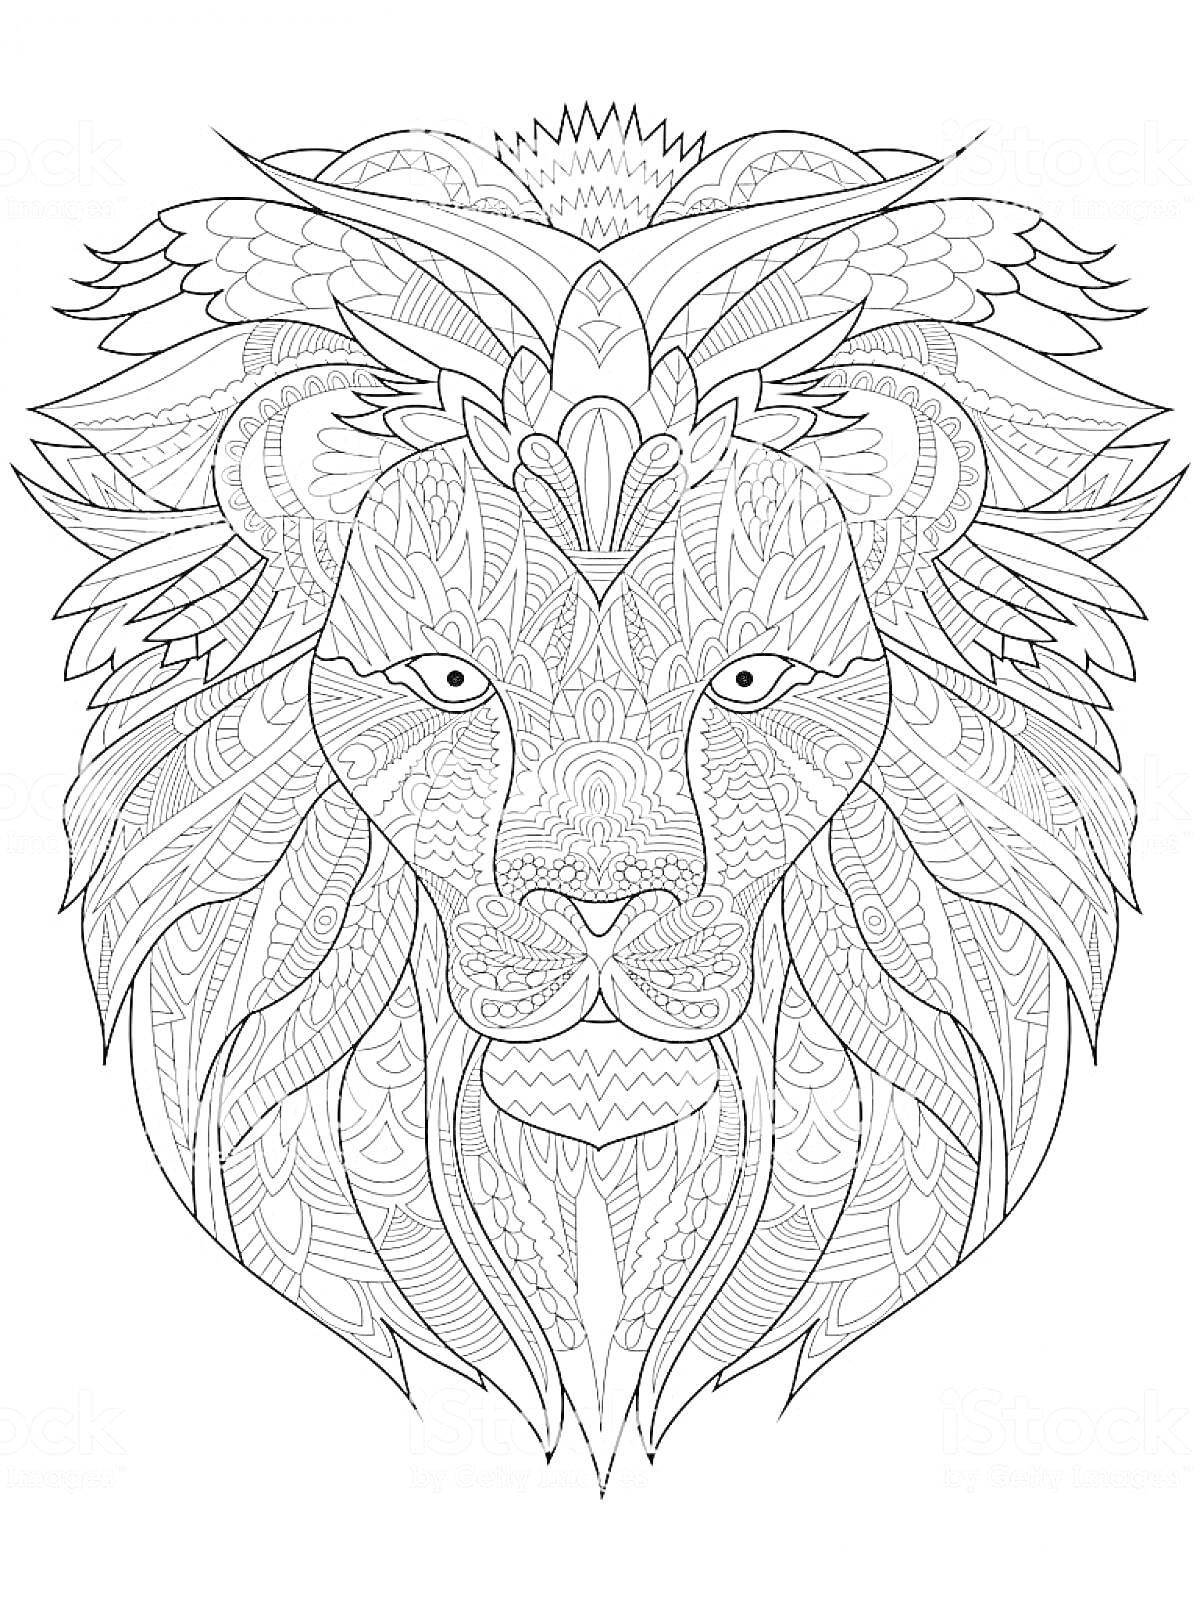 Раскраска Антистресс раскраска с изображением декоративного льва с деталями орнамента